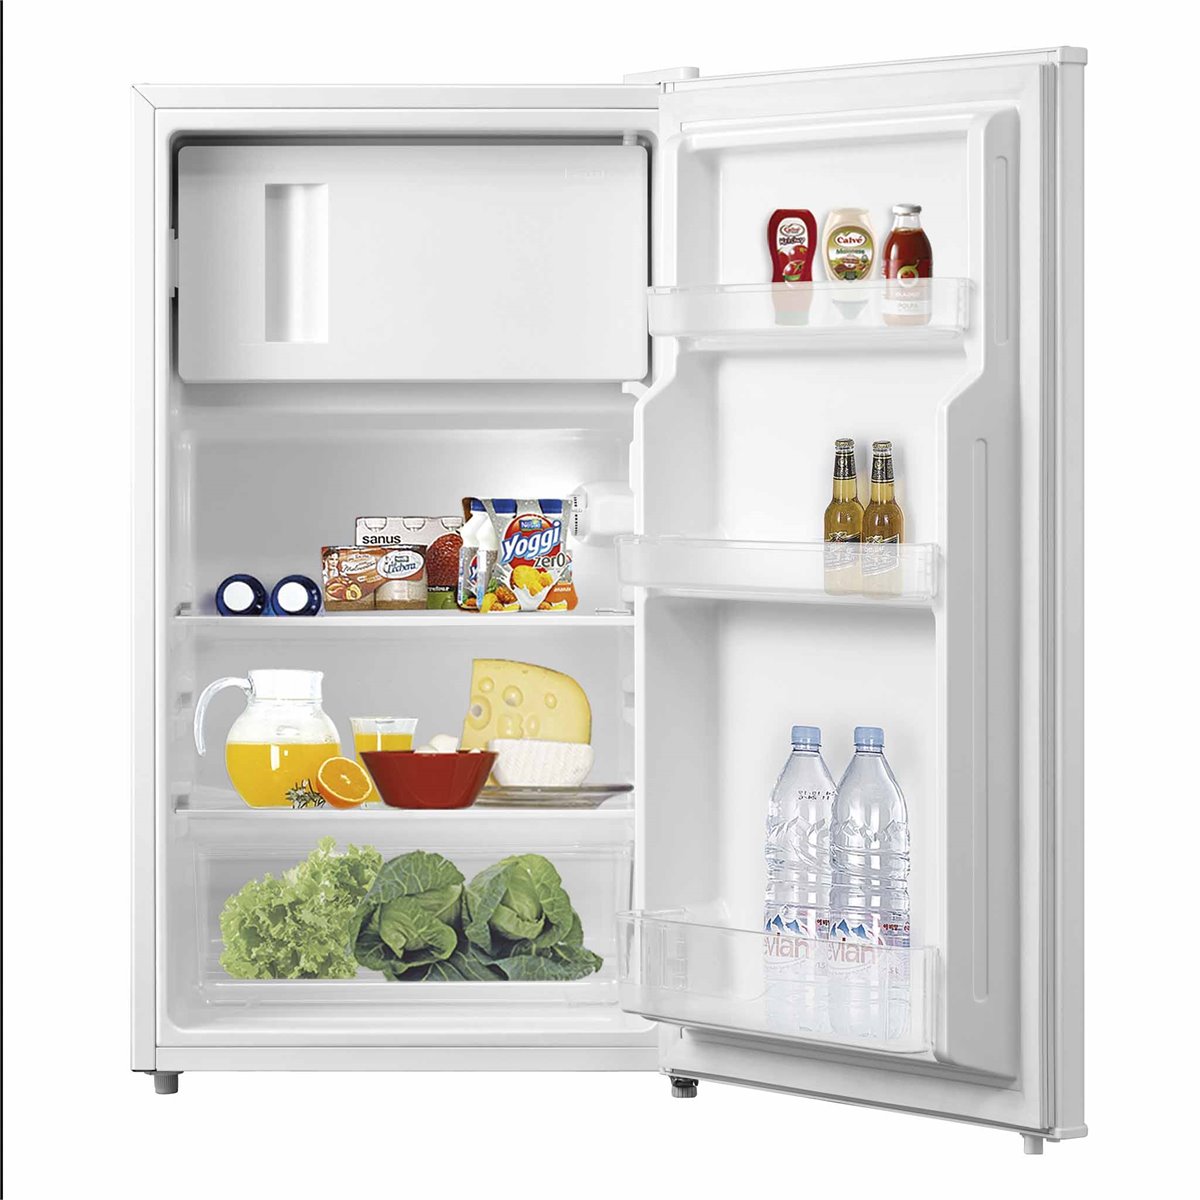 Frigoríficos baratos: combi, frigoríficos americanos, mini frigoríficos..